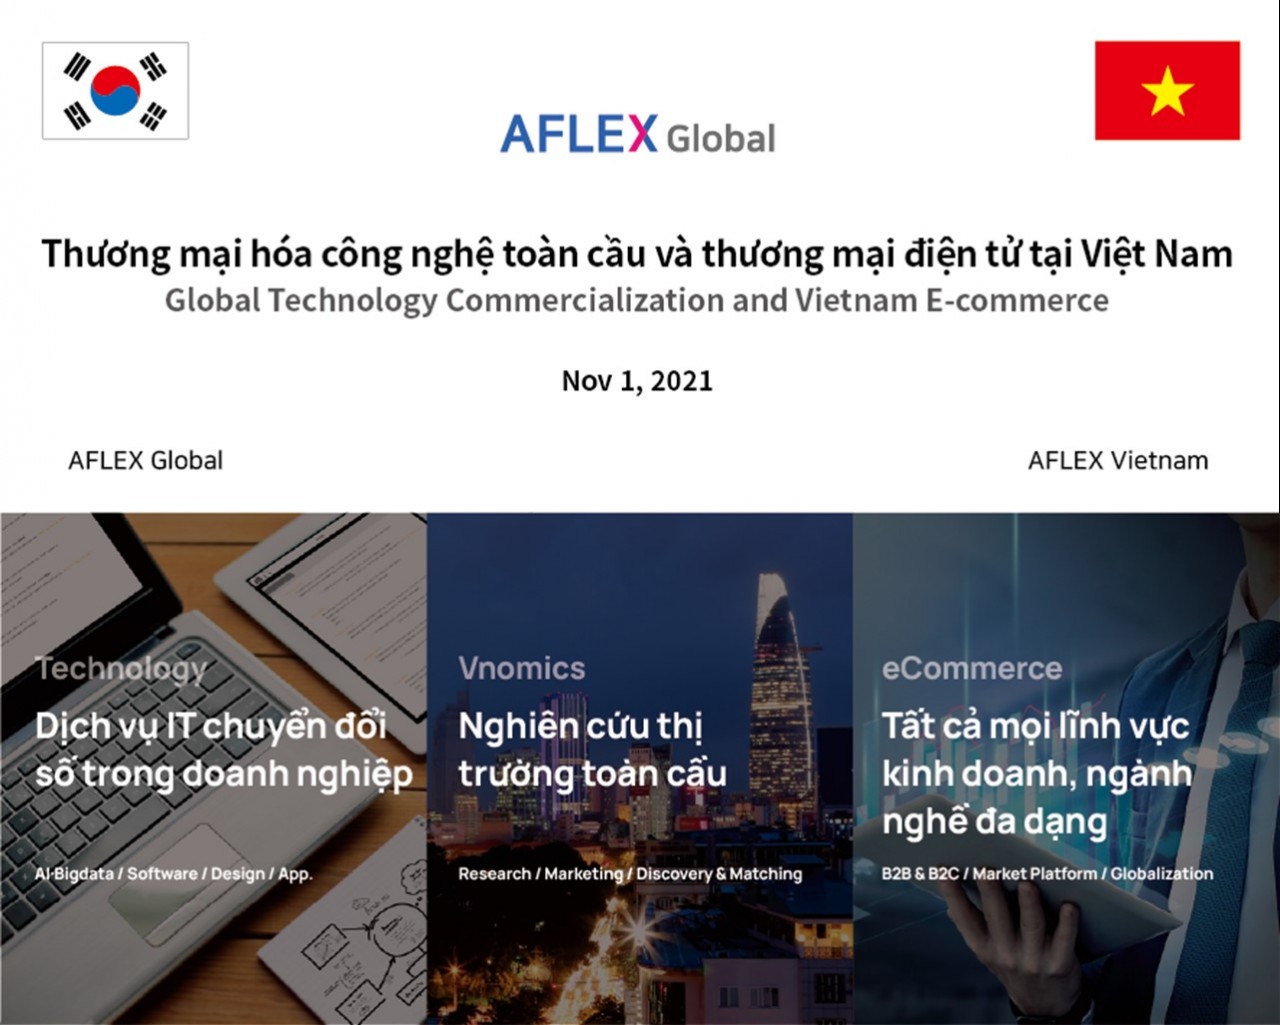 Aflex Global chính thức ra mắt nền tảng chuyển giao công nghệ & thương mại hóa